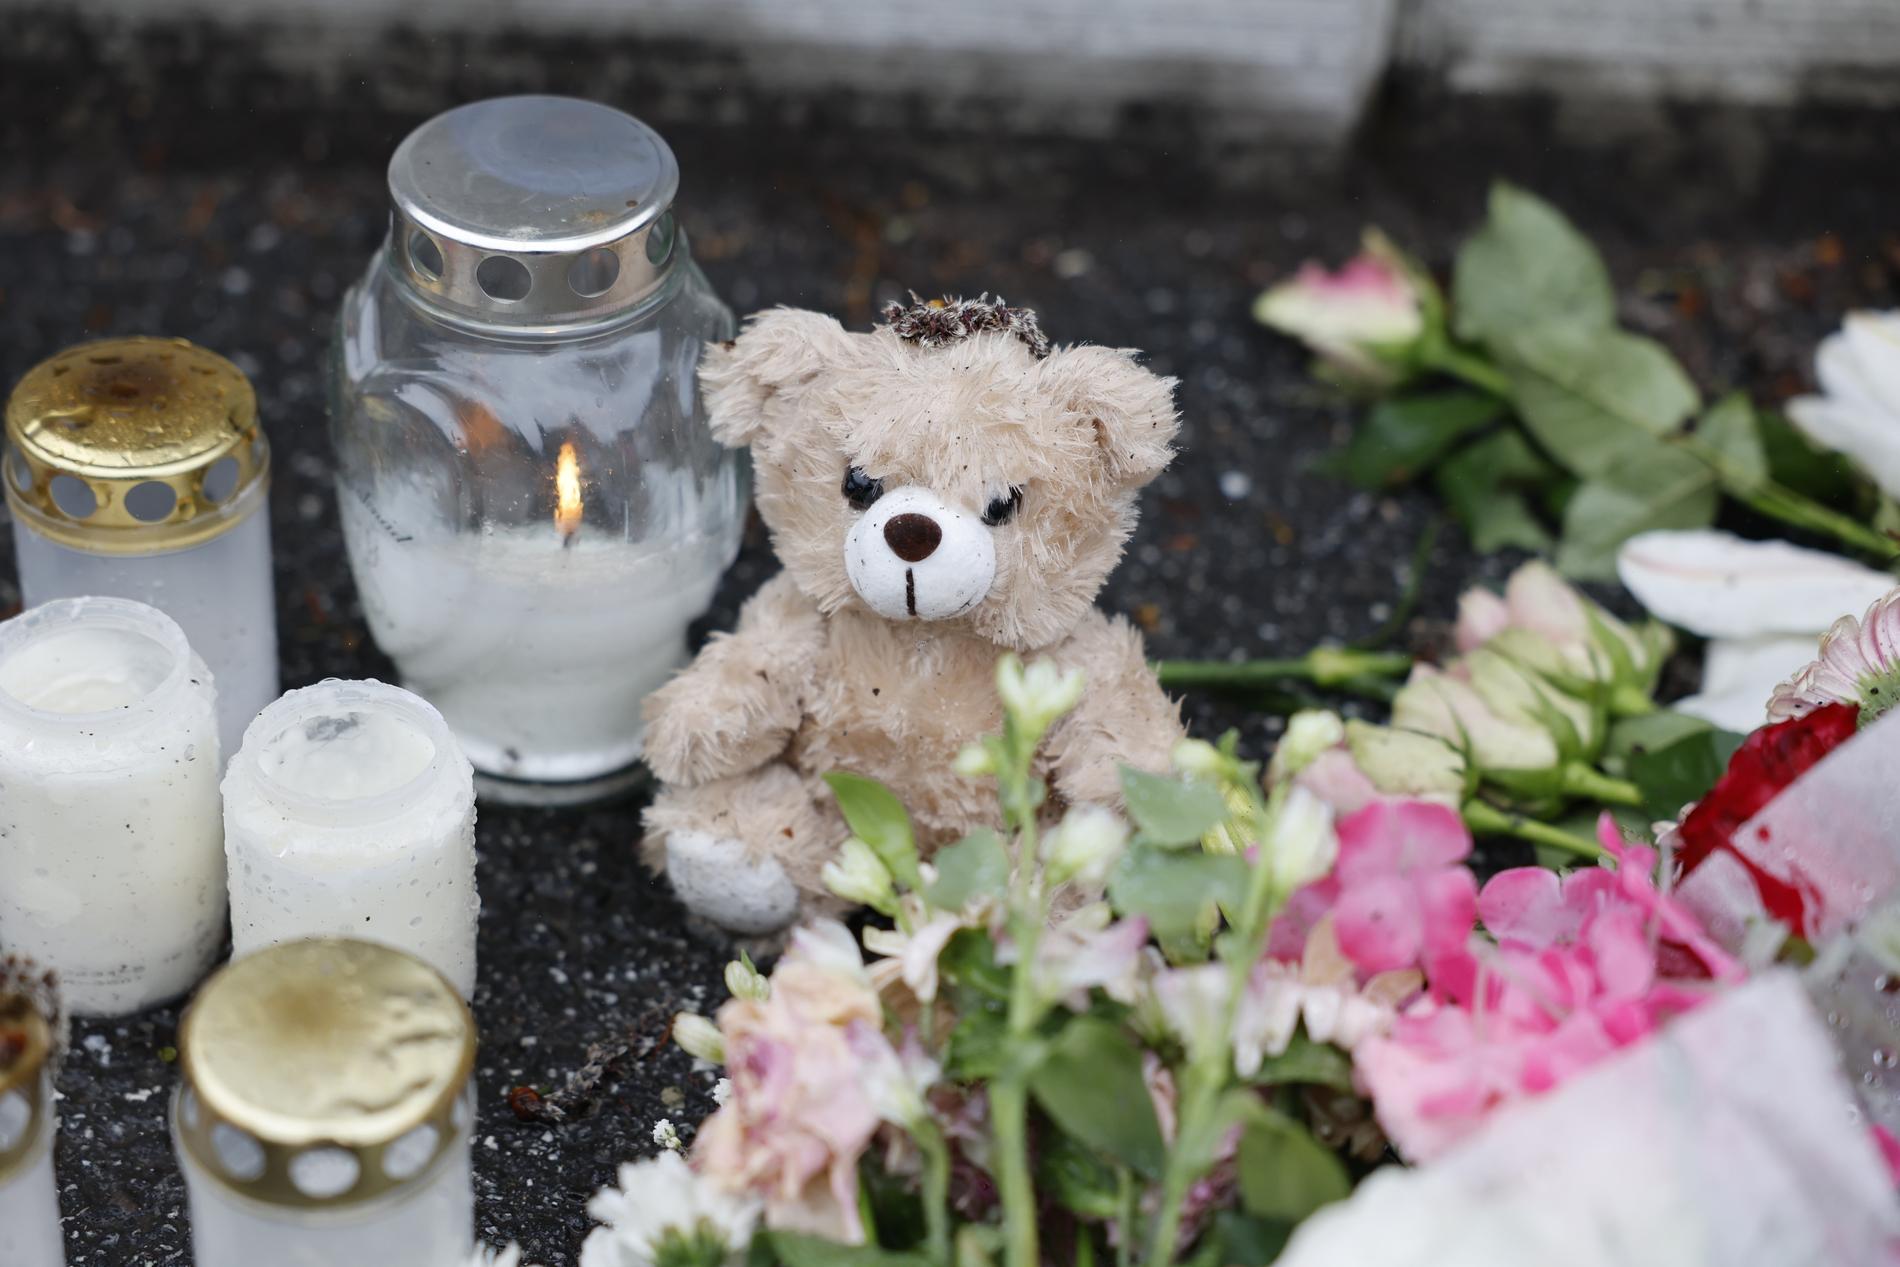 En minnesplats med nallar, blommor och ljus har bildats utanför huset där två barn misstänks ha mördats av sin pappa i bostadsområdet Lina Hage i Södertälje.